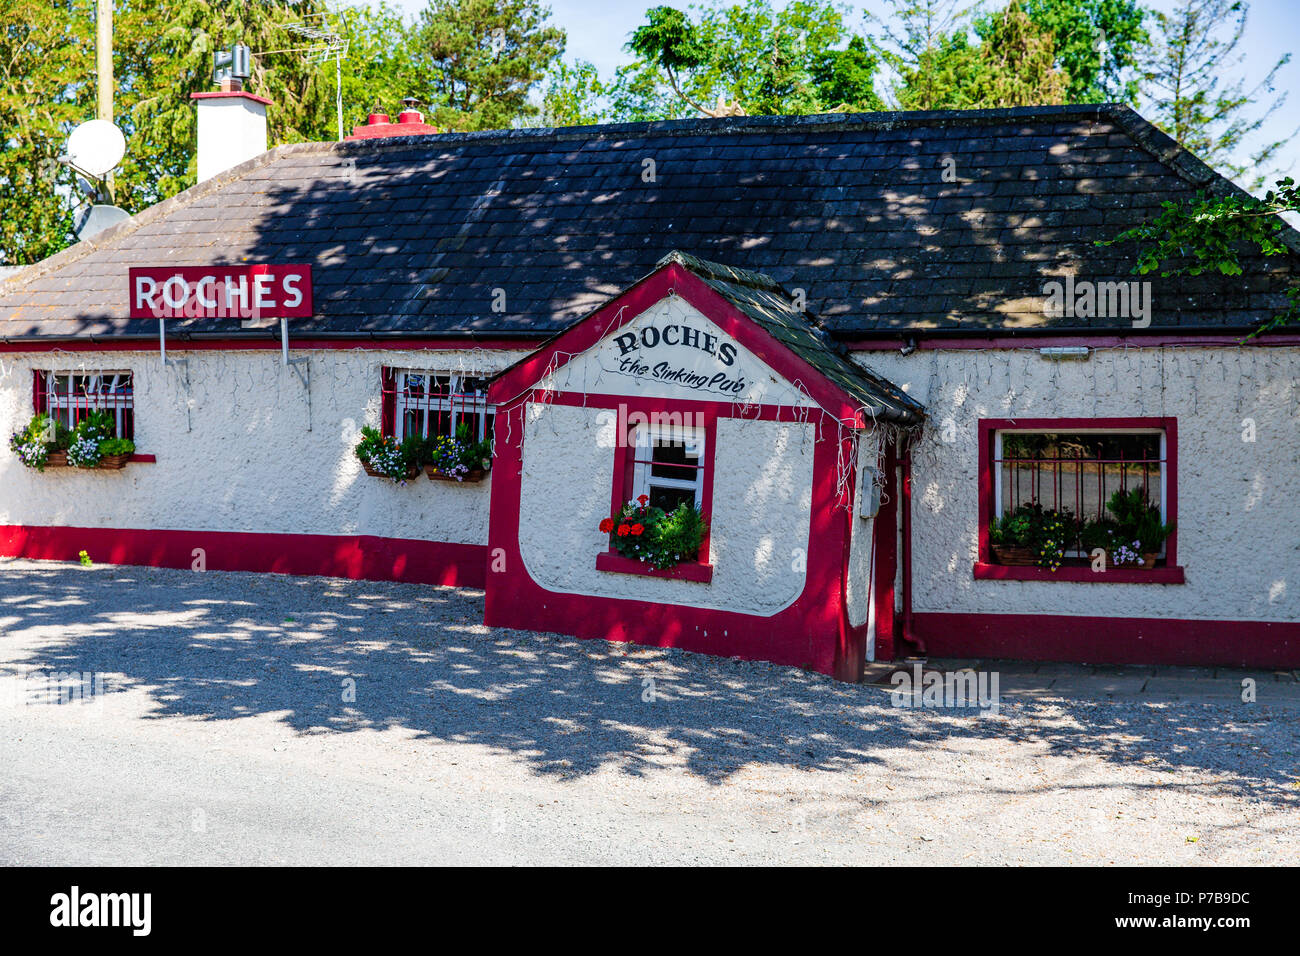 Irish Pub - Roches The Sinking Pub in Donadea, County Kildare, Ireland Stock Photo